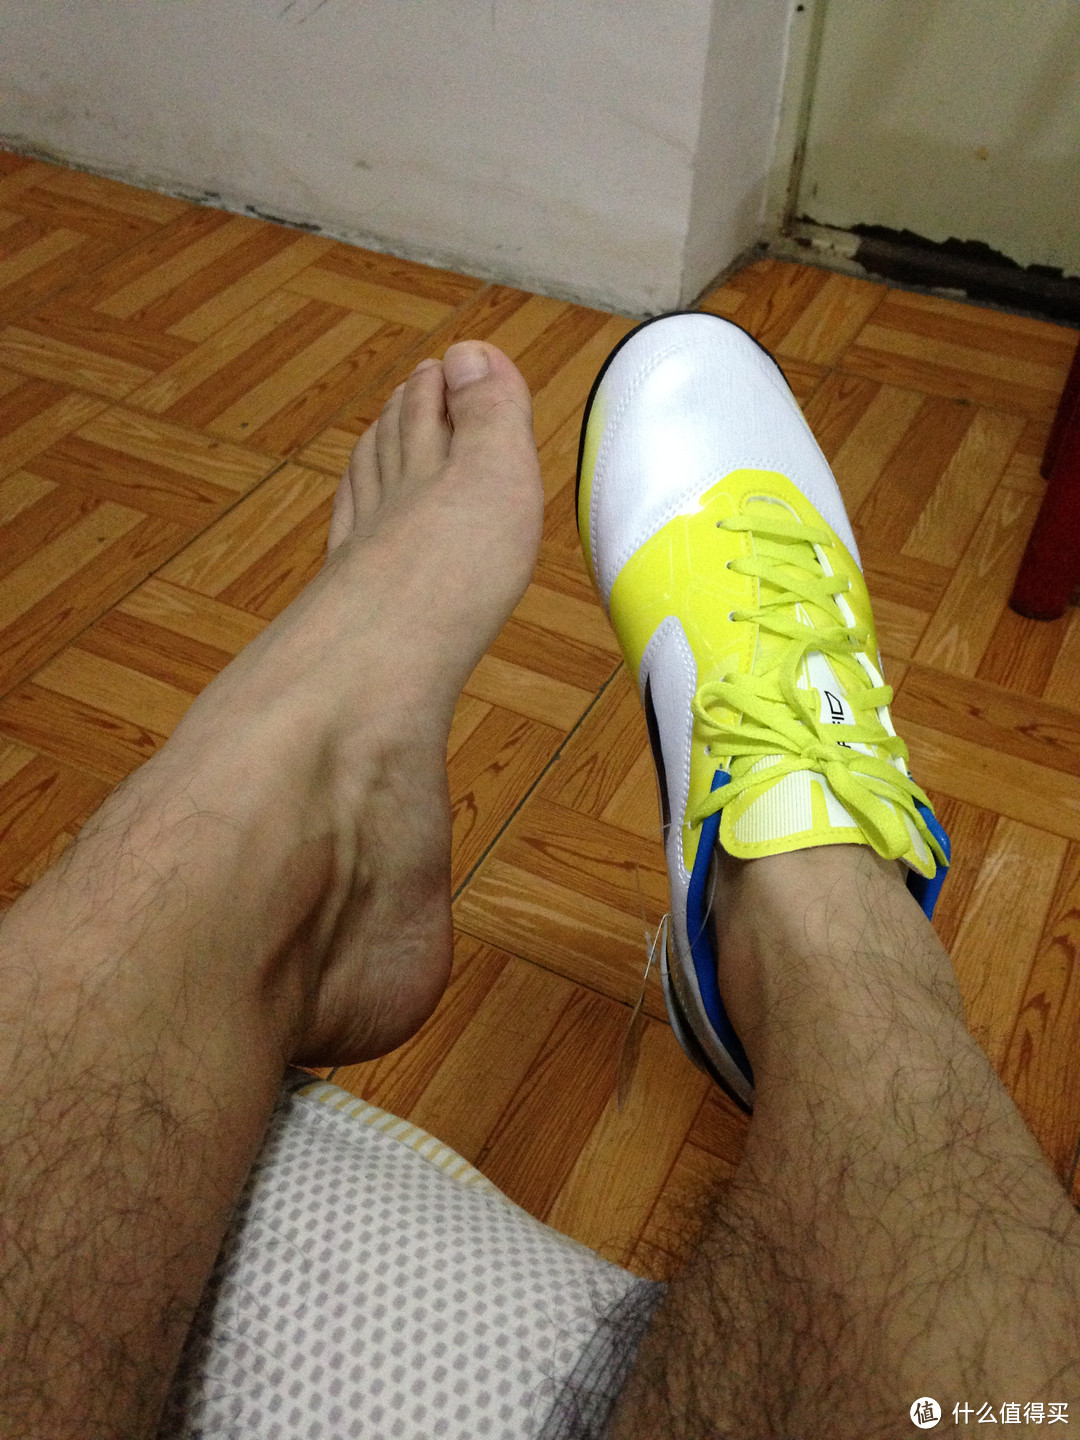 世界杯又要来了，小伙伴们来踢球吧：adidas 阿迪达斯 F50系列 HG 男款胶质短钉草地足球鞋 V21321